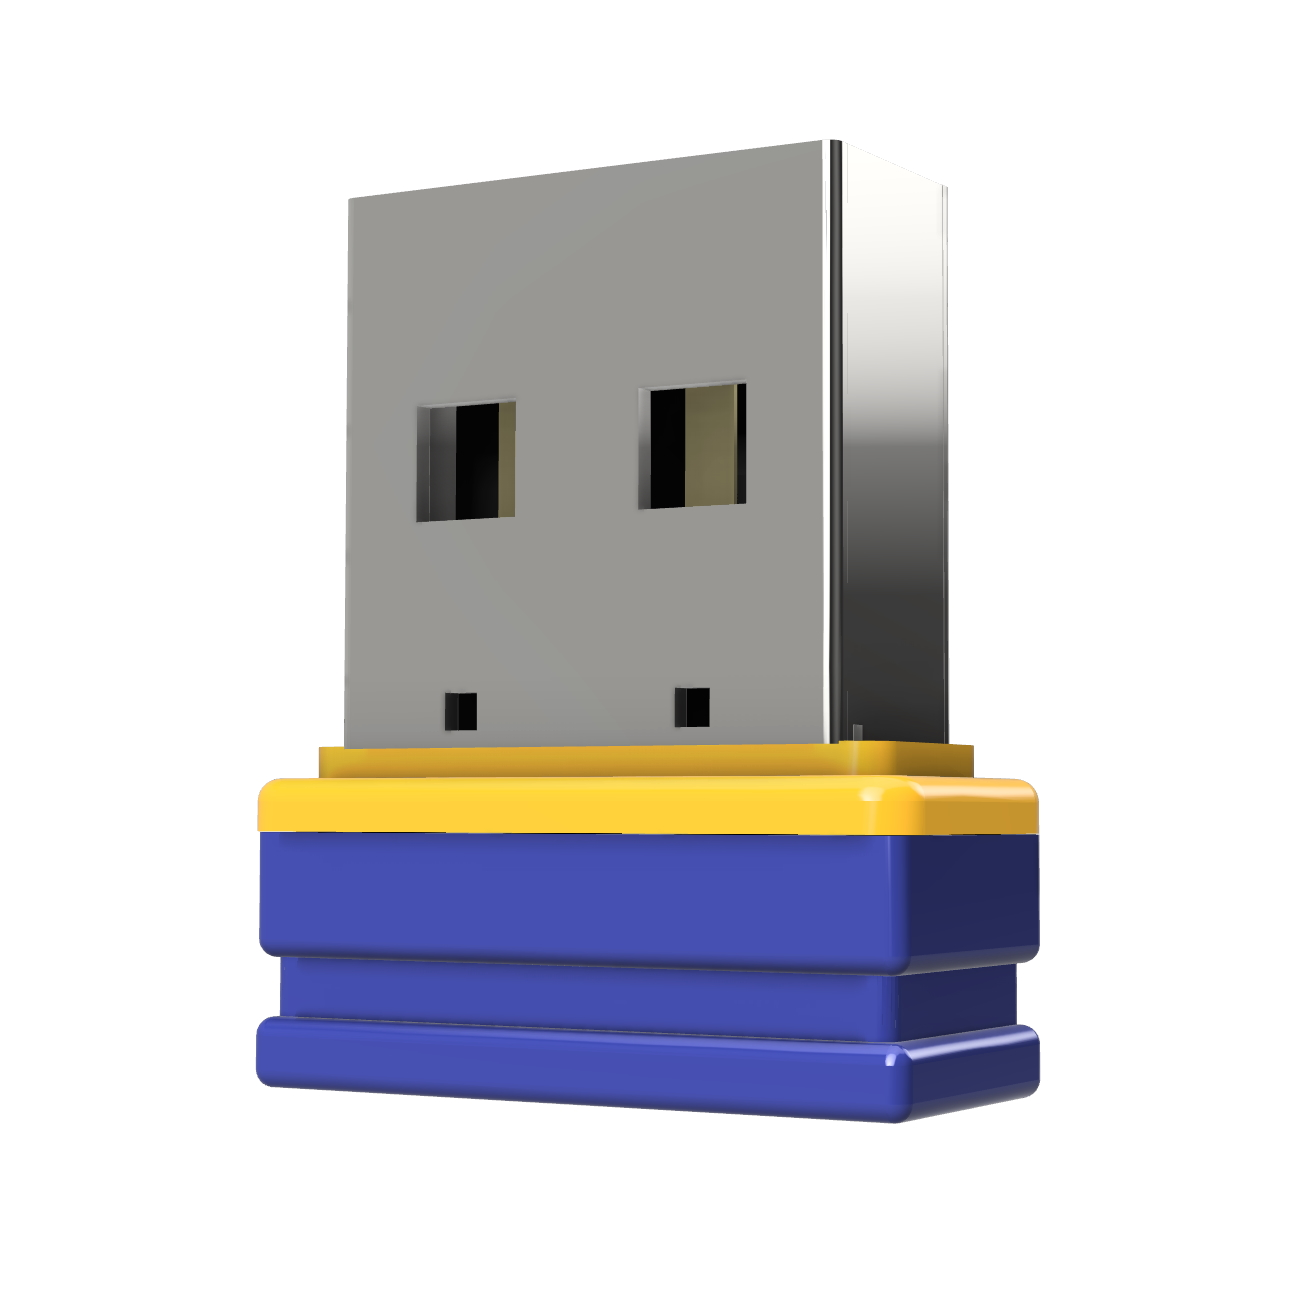 P1 USB GERMANY (Blau/Gelb, 2 Mini GB) ®ULTRA USB-Stick